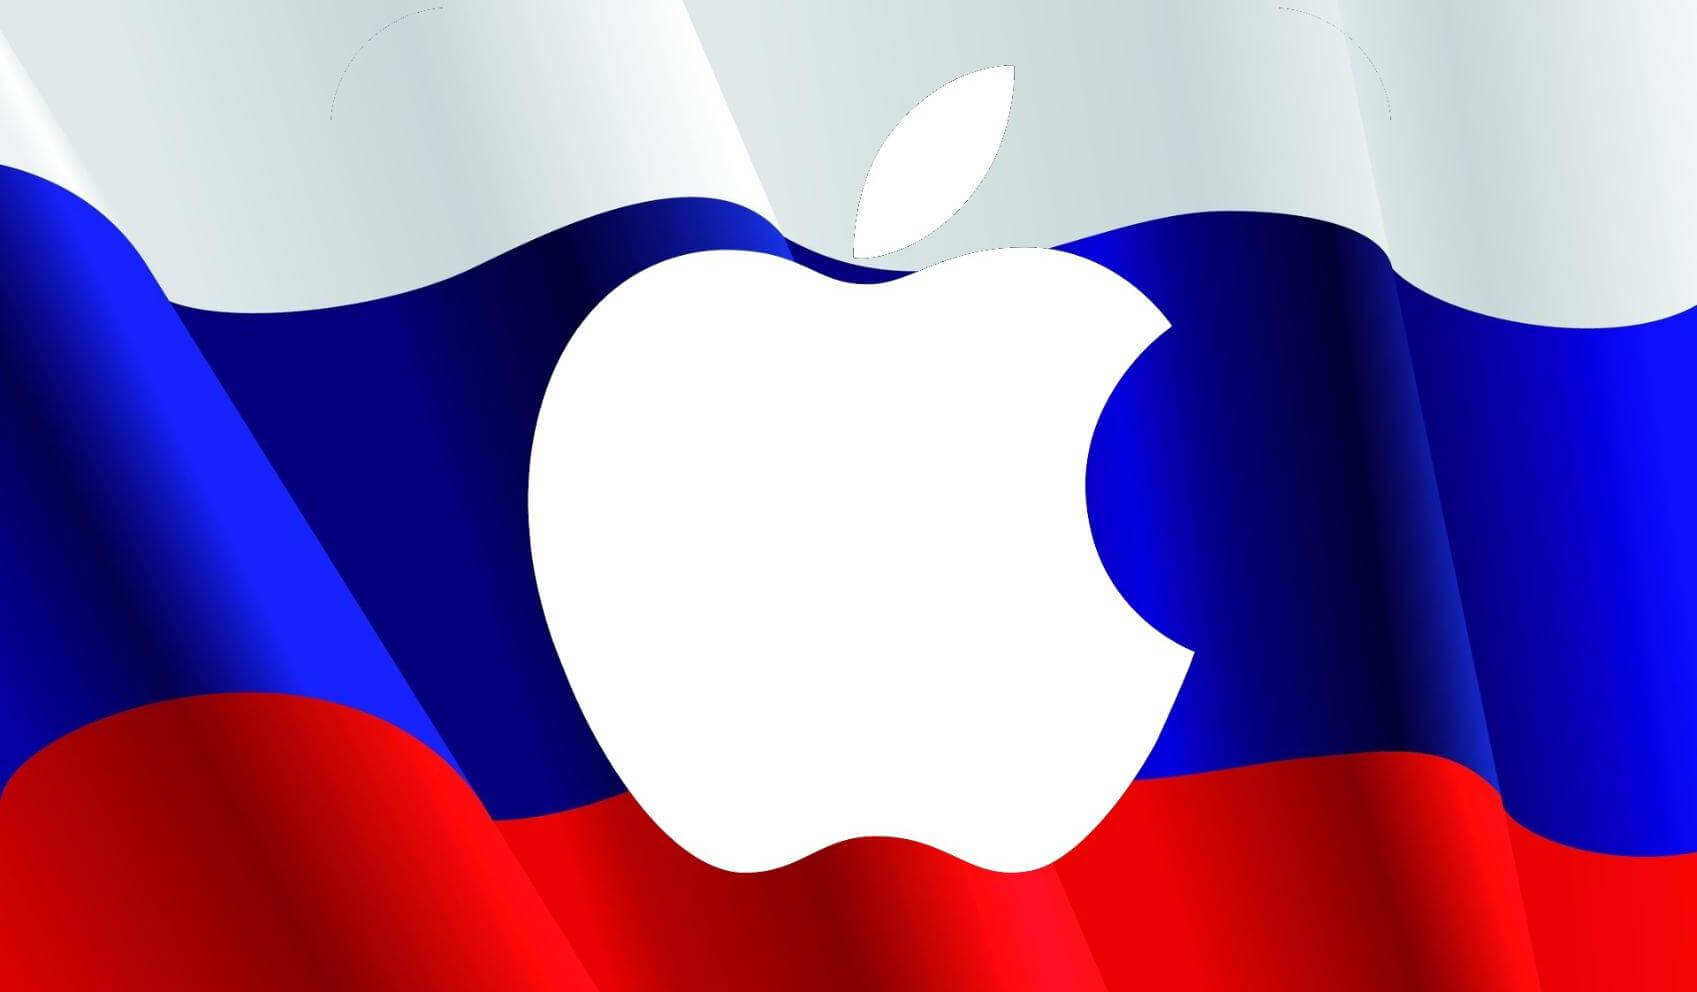 ФАС требует от Apple открыть NFC в iPhone и разрешить бесконтактную оплату в России. Что это значит для всех нас